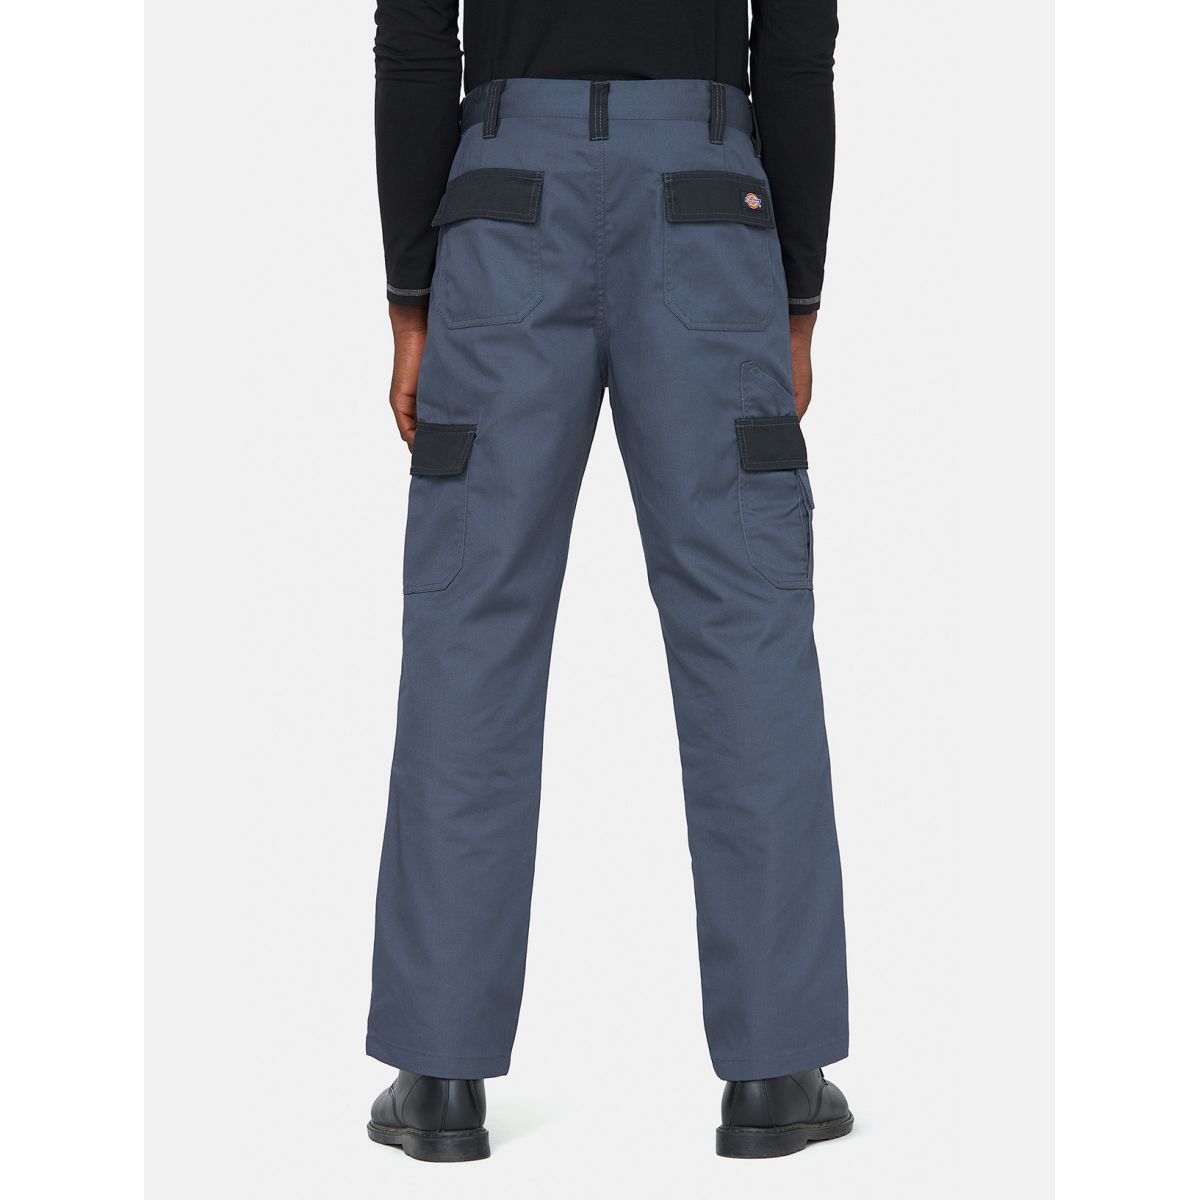 Pantalon Everyday Gris et noir- Dickies - Taille 44 1